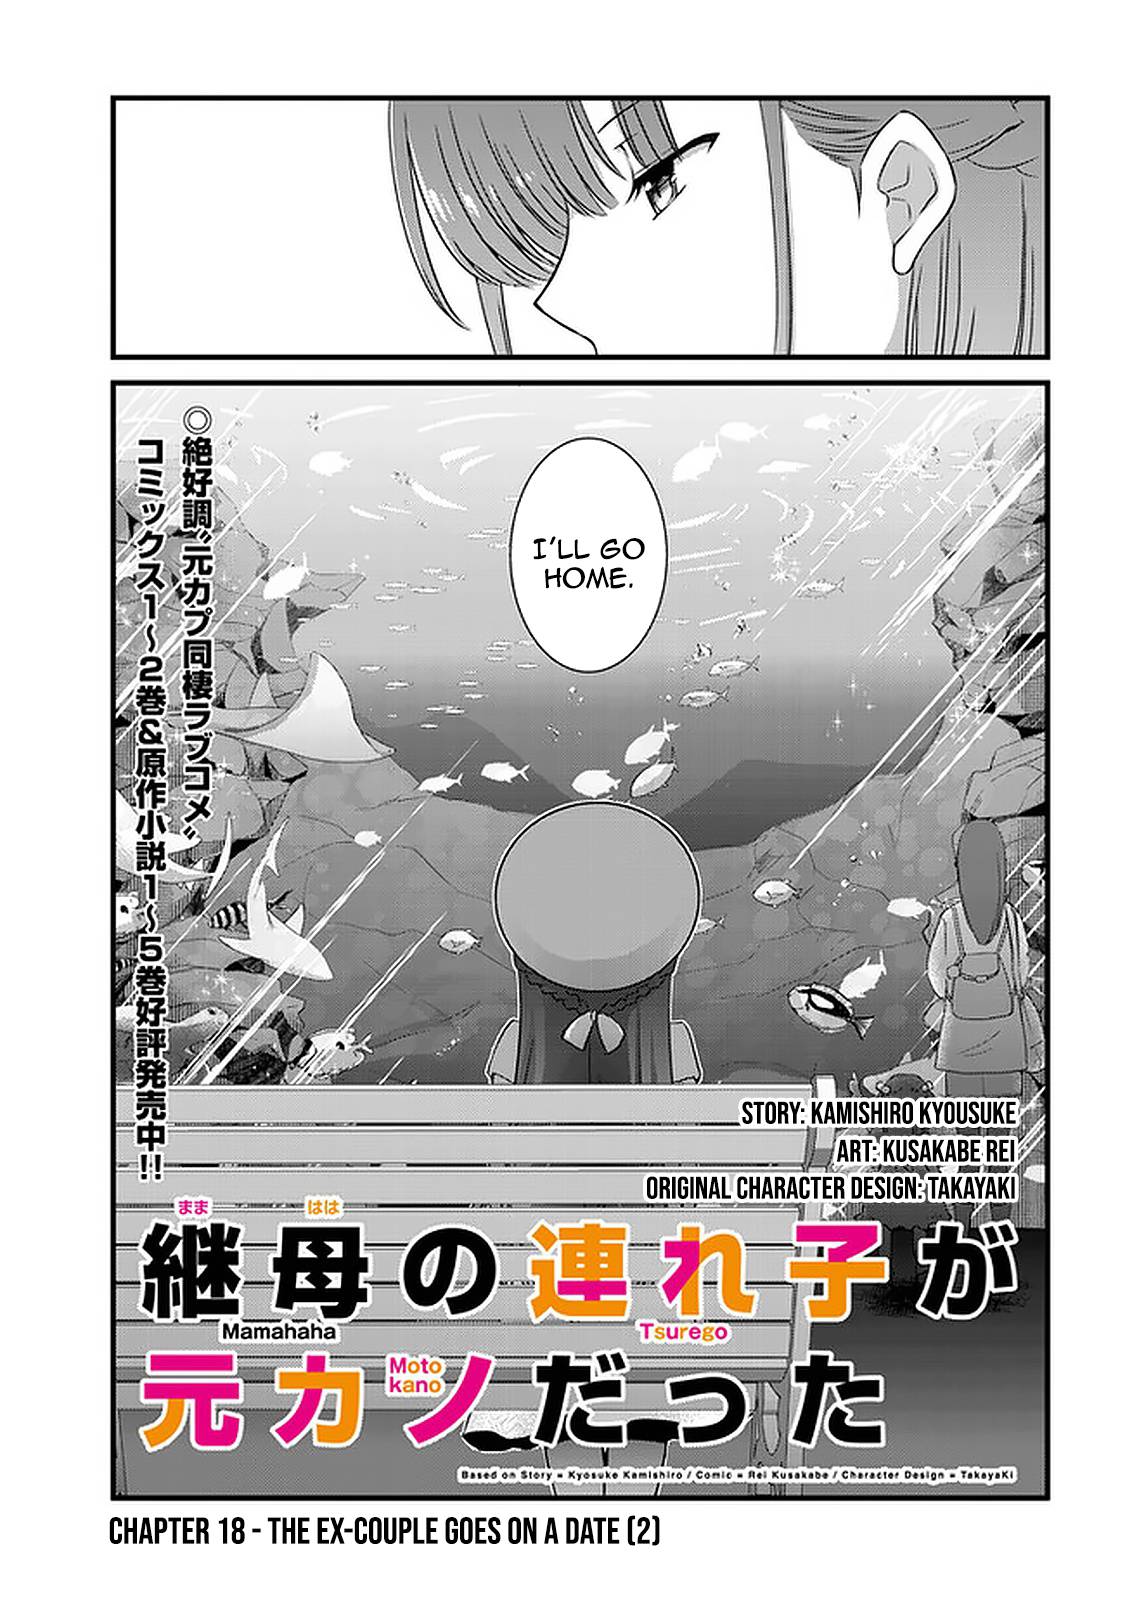 Mamahaha no Tsurego ga Moto Kano datta (Manga) - Chapter 15.1